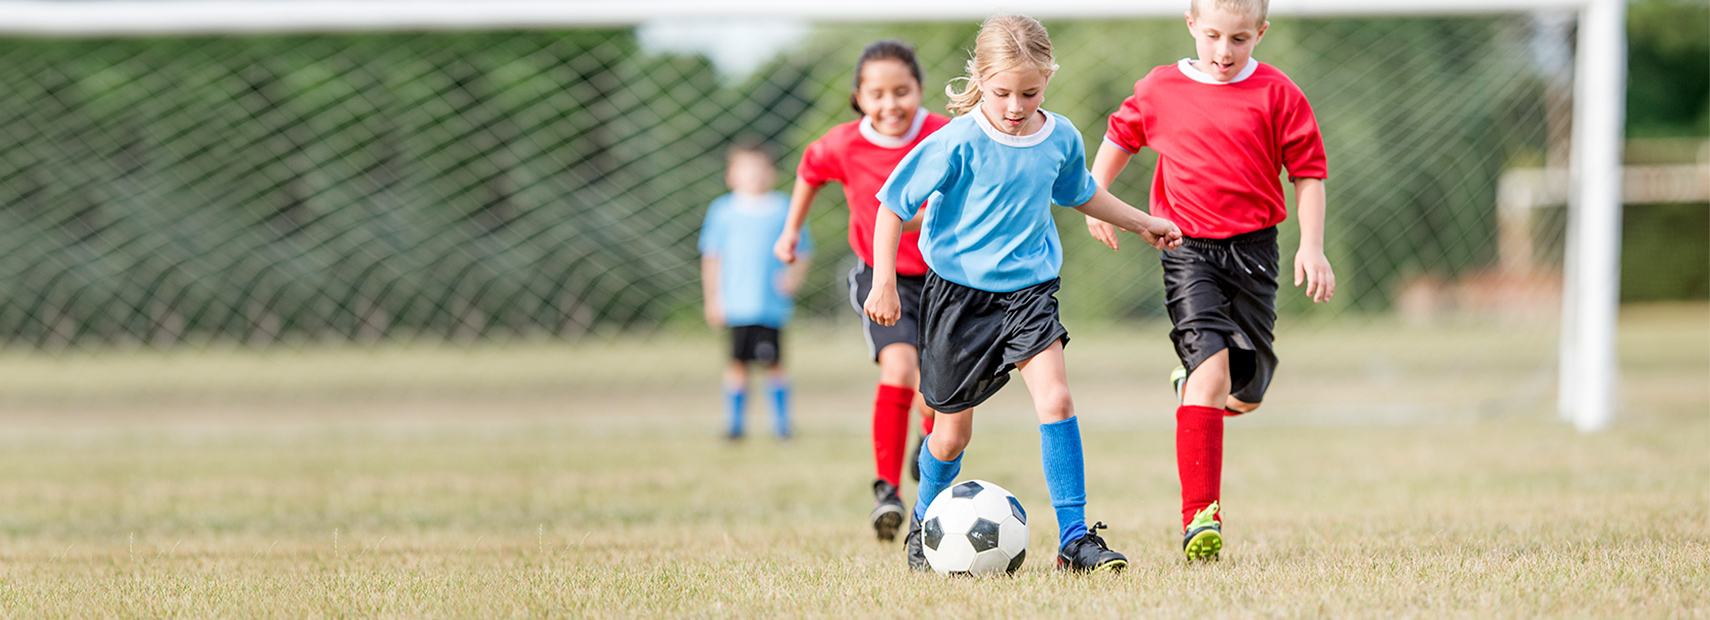 Sports Medicine Services for Children | Pediatric Sports Medicine